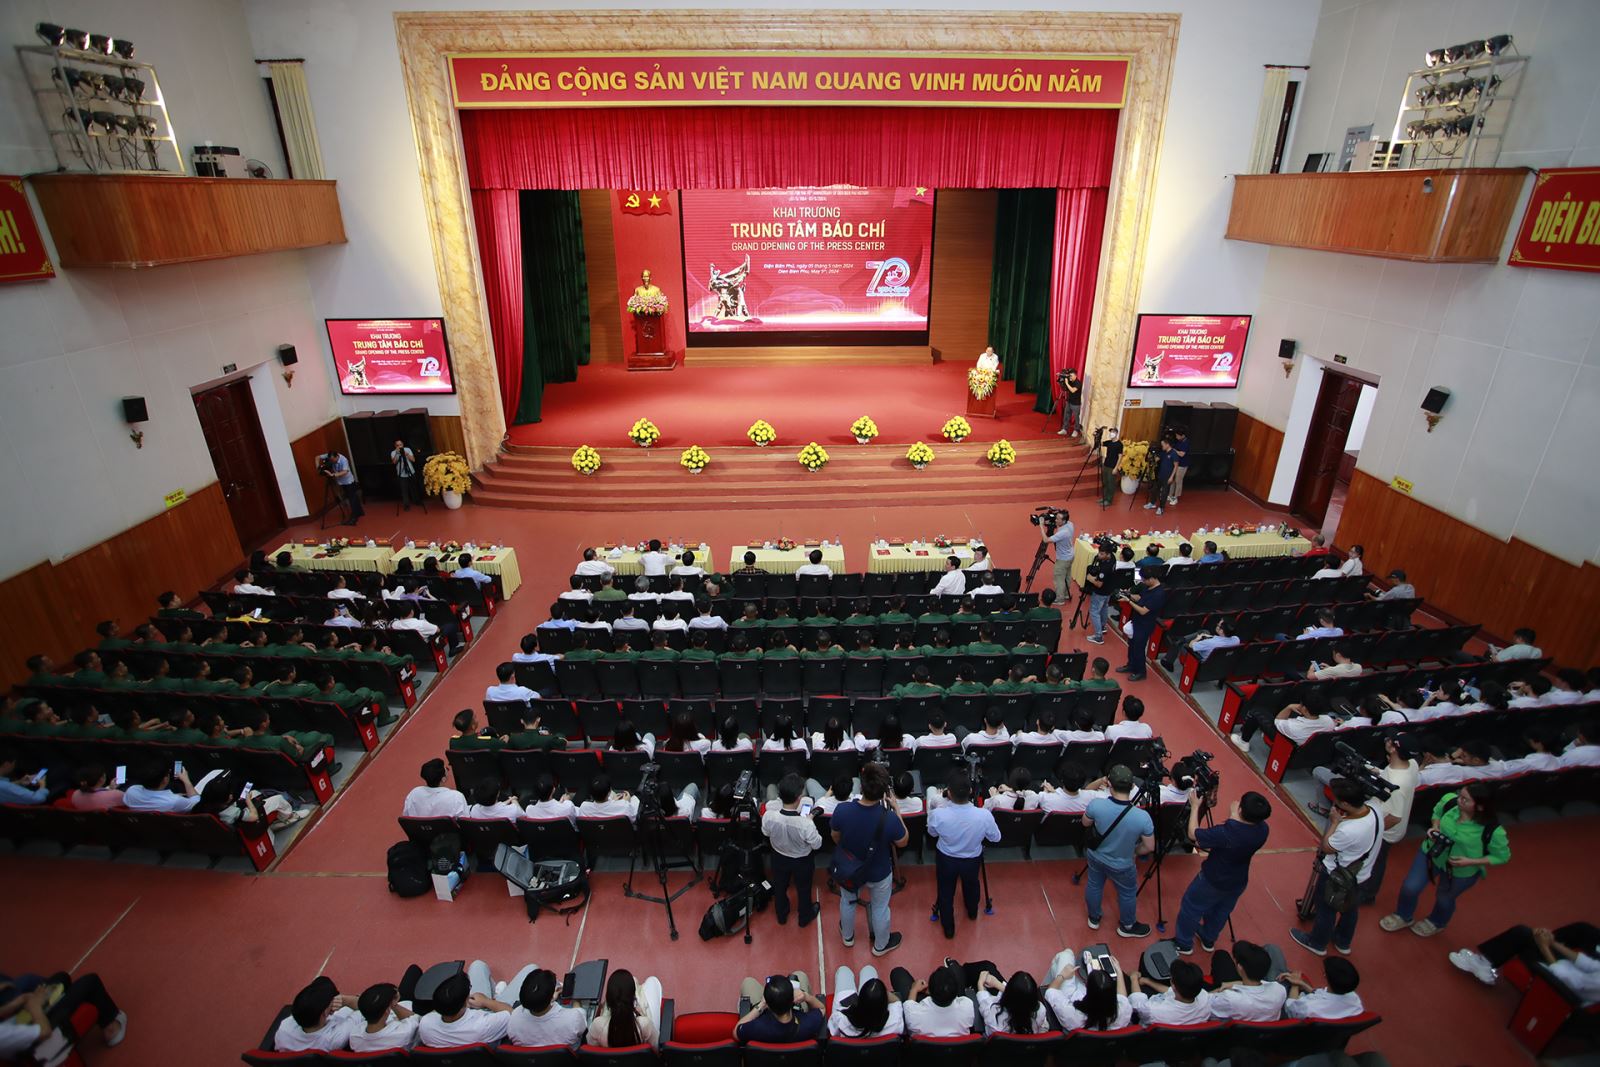 Chiều ngày 5-5, tại Hội trường tầng 1, Trung tâm Hội nghị - Văn hóa tỉnh Điện Biên đã diễn ra chương trình Khai trương Trung tâm Báo chí và phát hành bộ tem kỷ niệm 70 năm Chiến thắng Điện Biên Phủ.